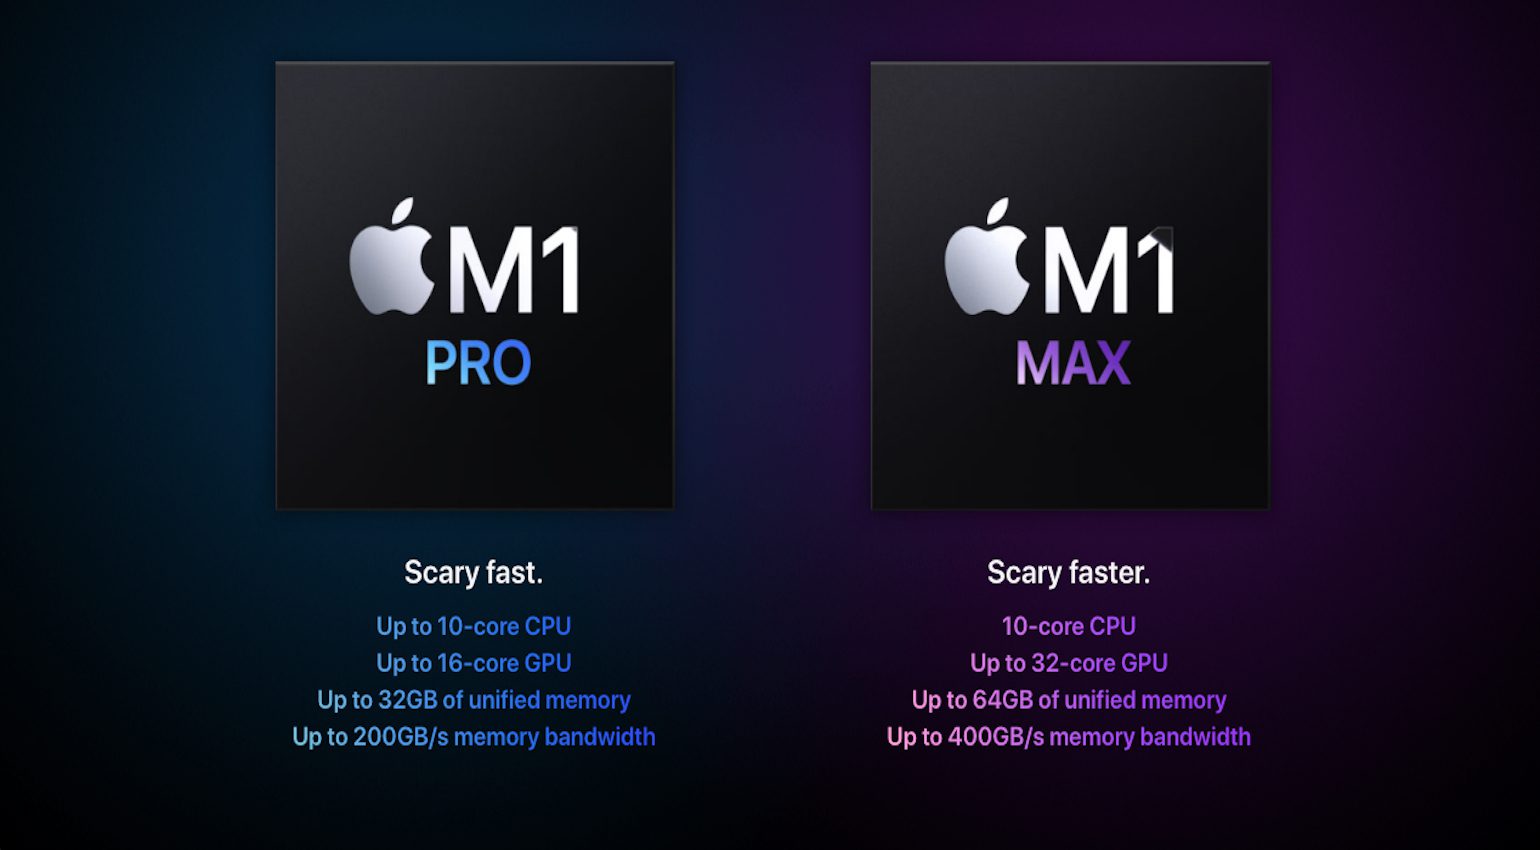 The M1 Pro and M1 Max processor range.